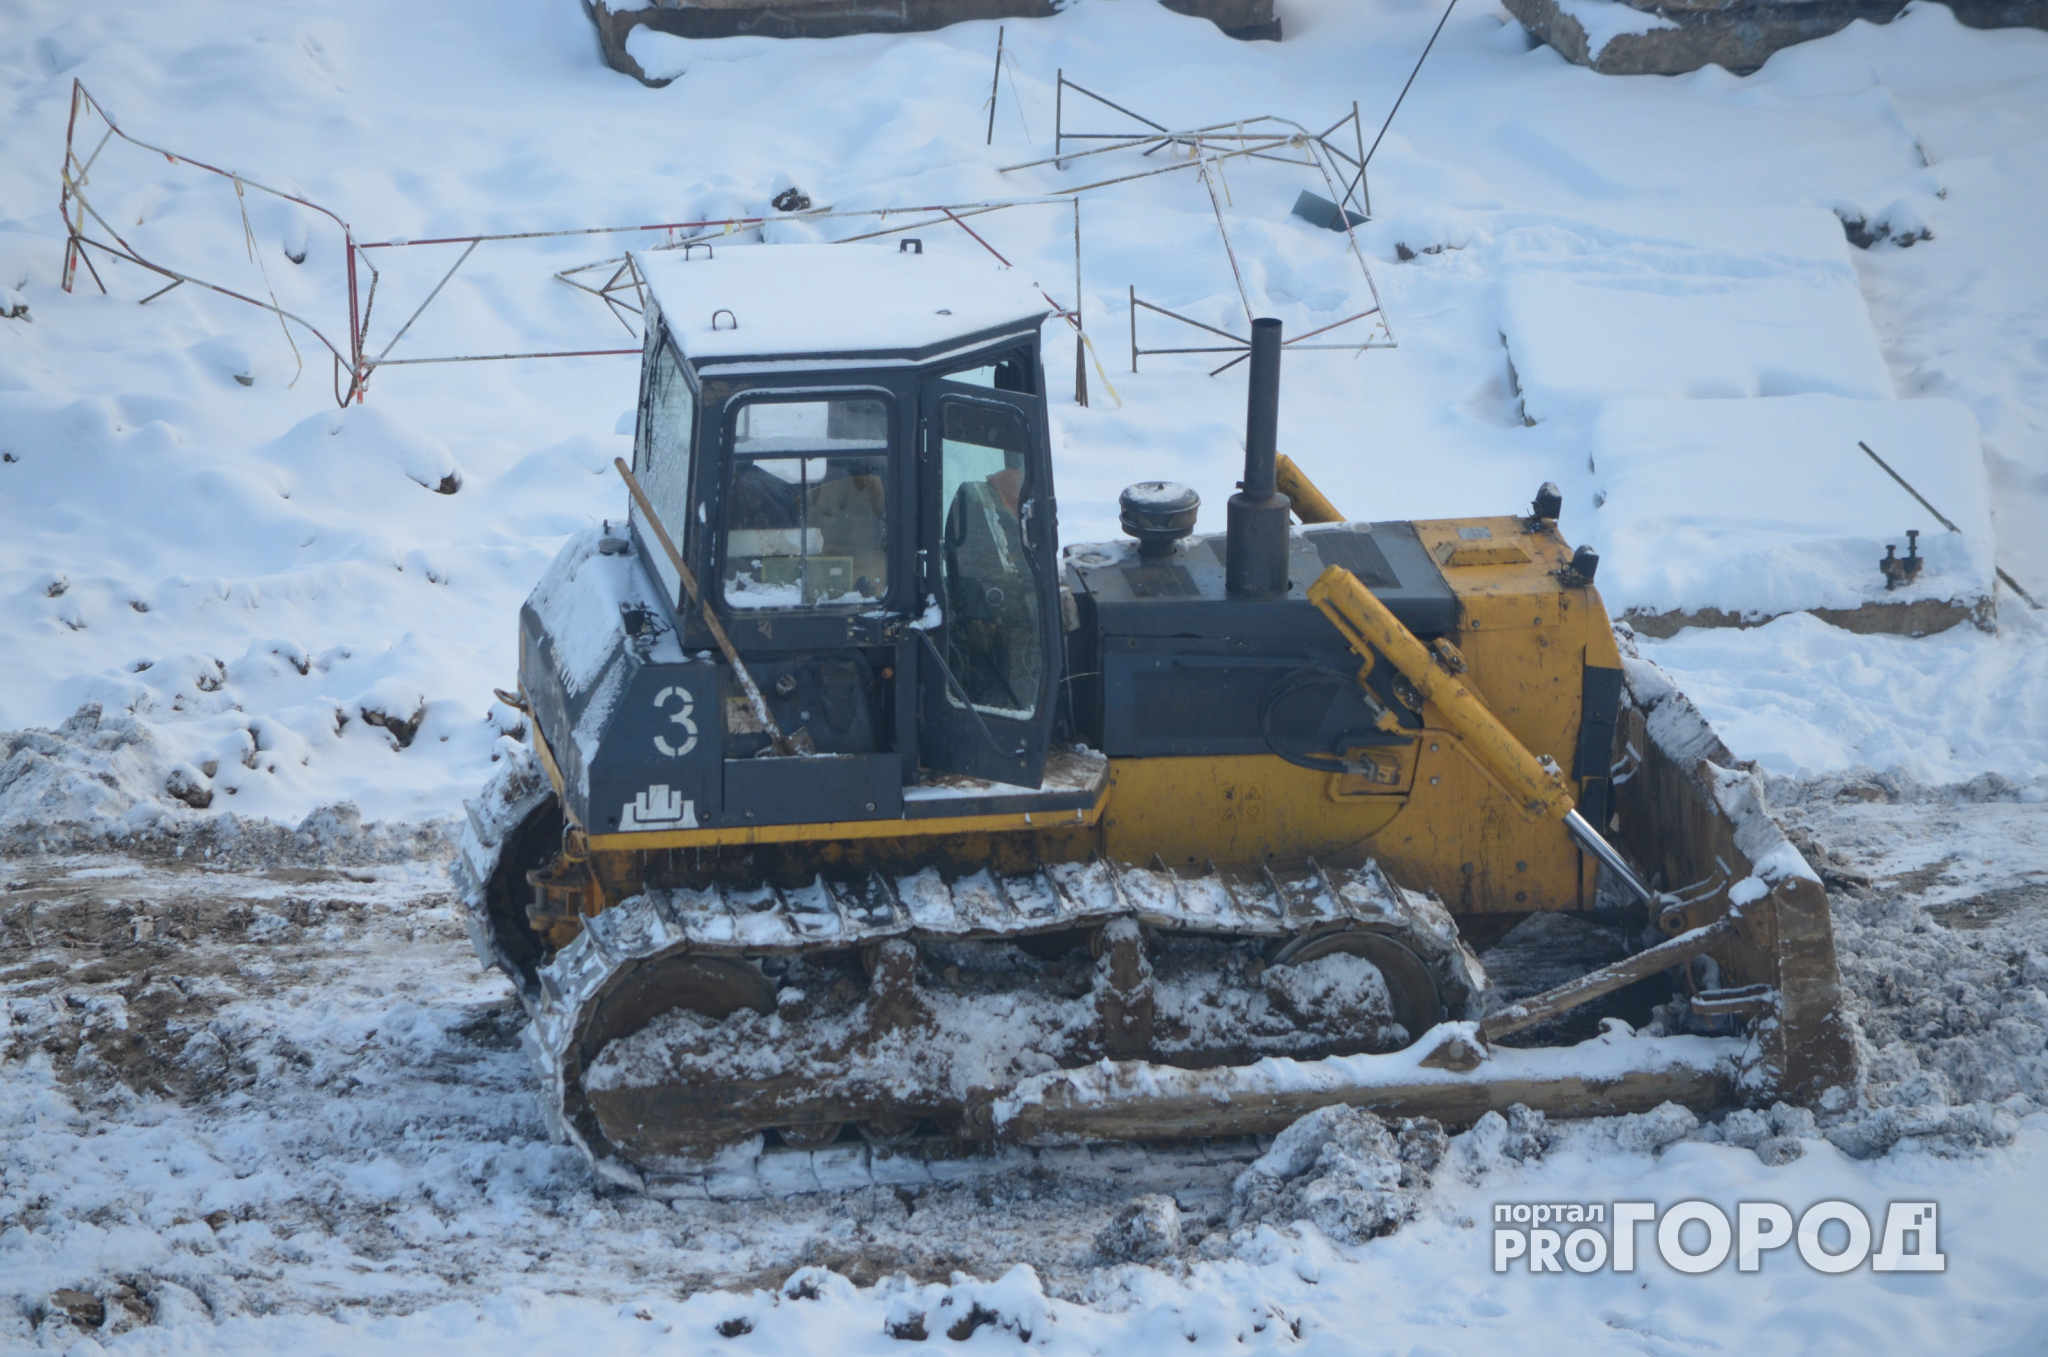 В Кирове пьяный тракторист чистил снег и разбил припаркованную машину